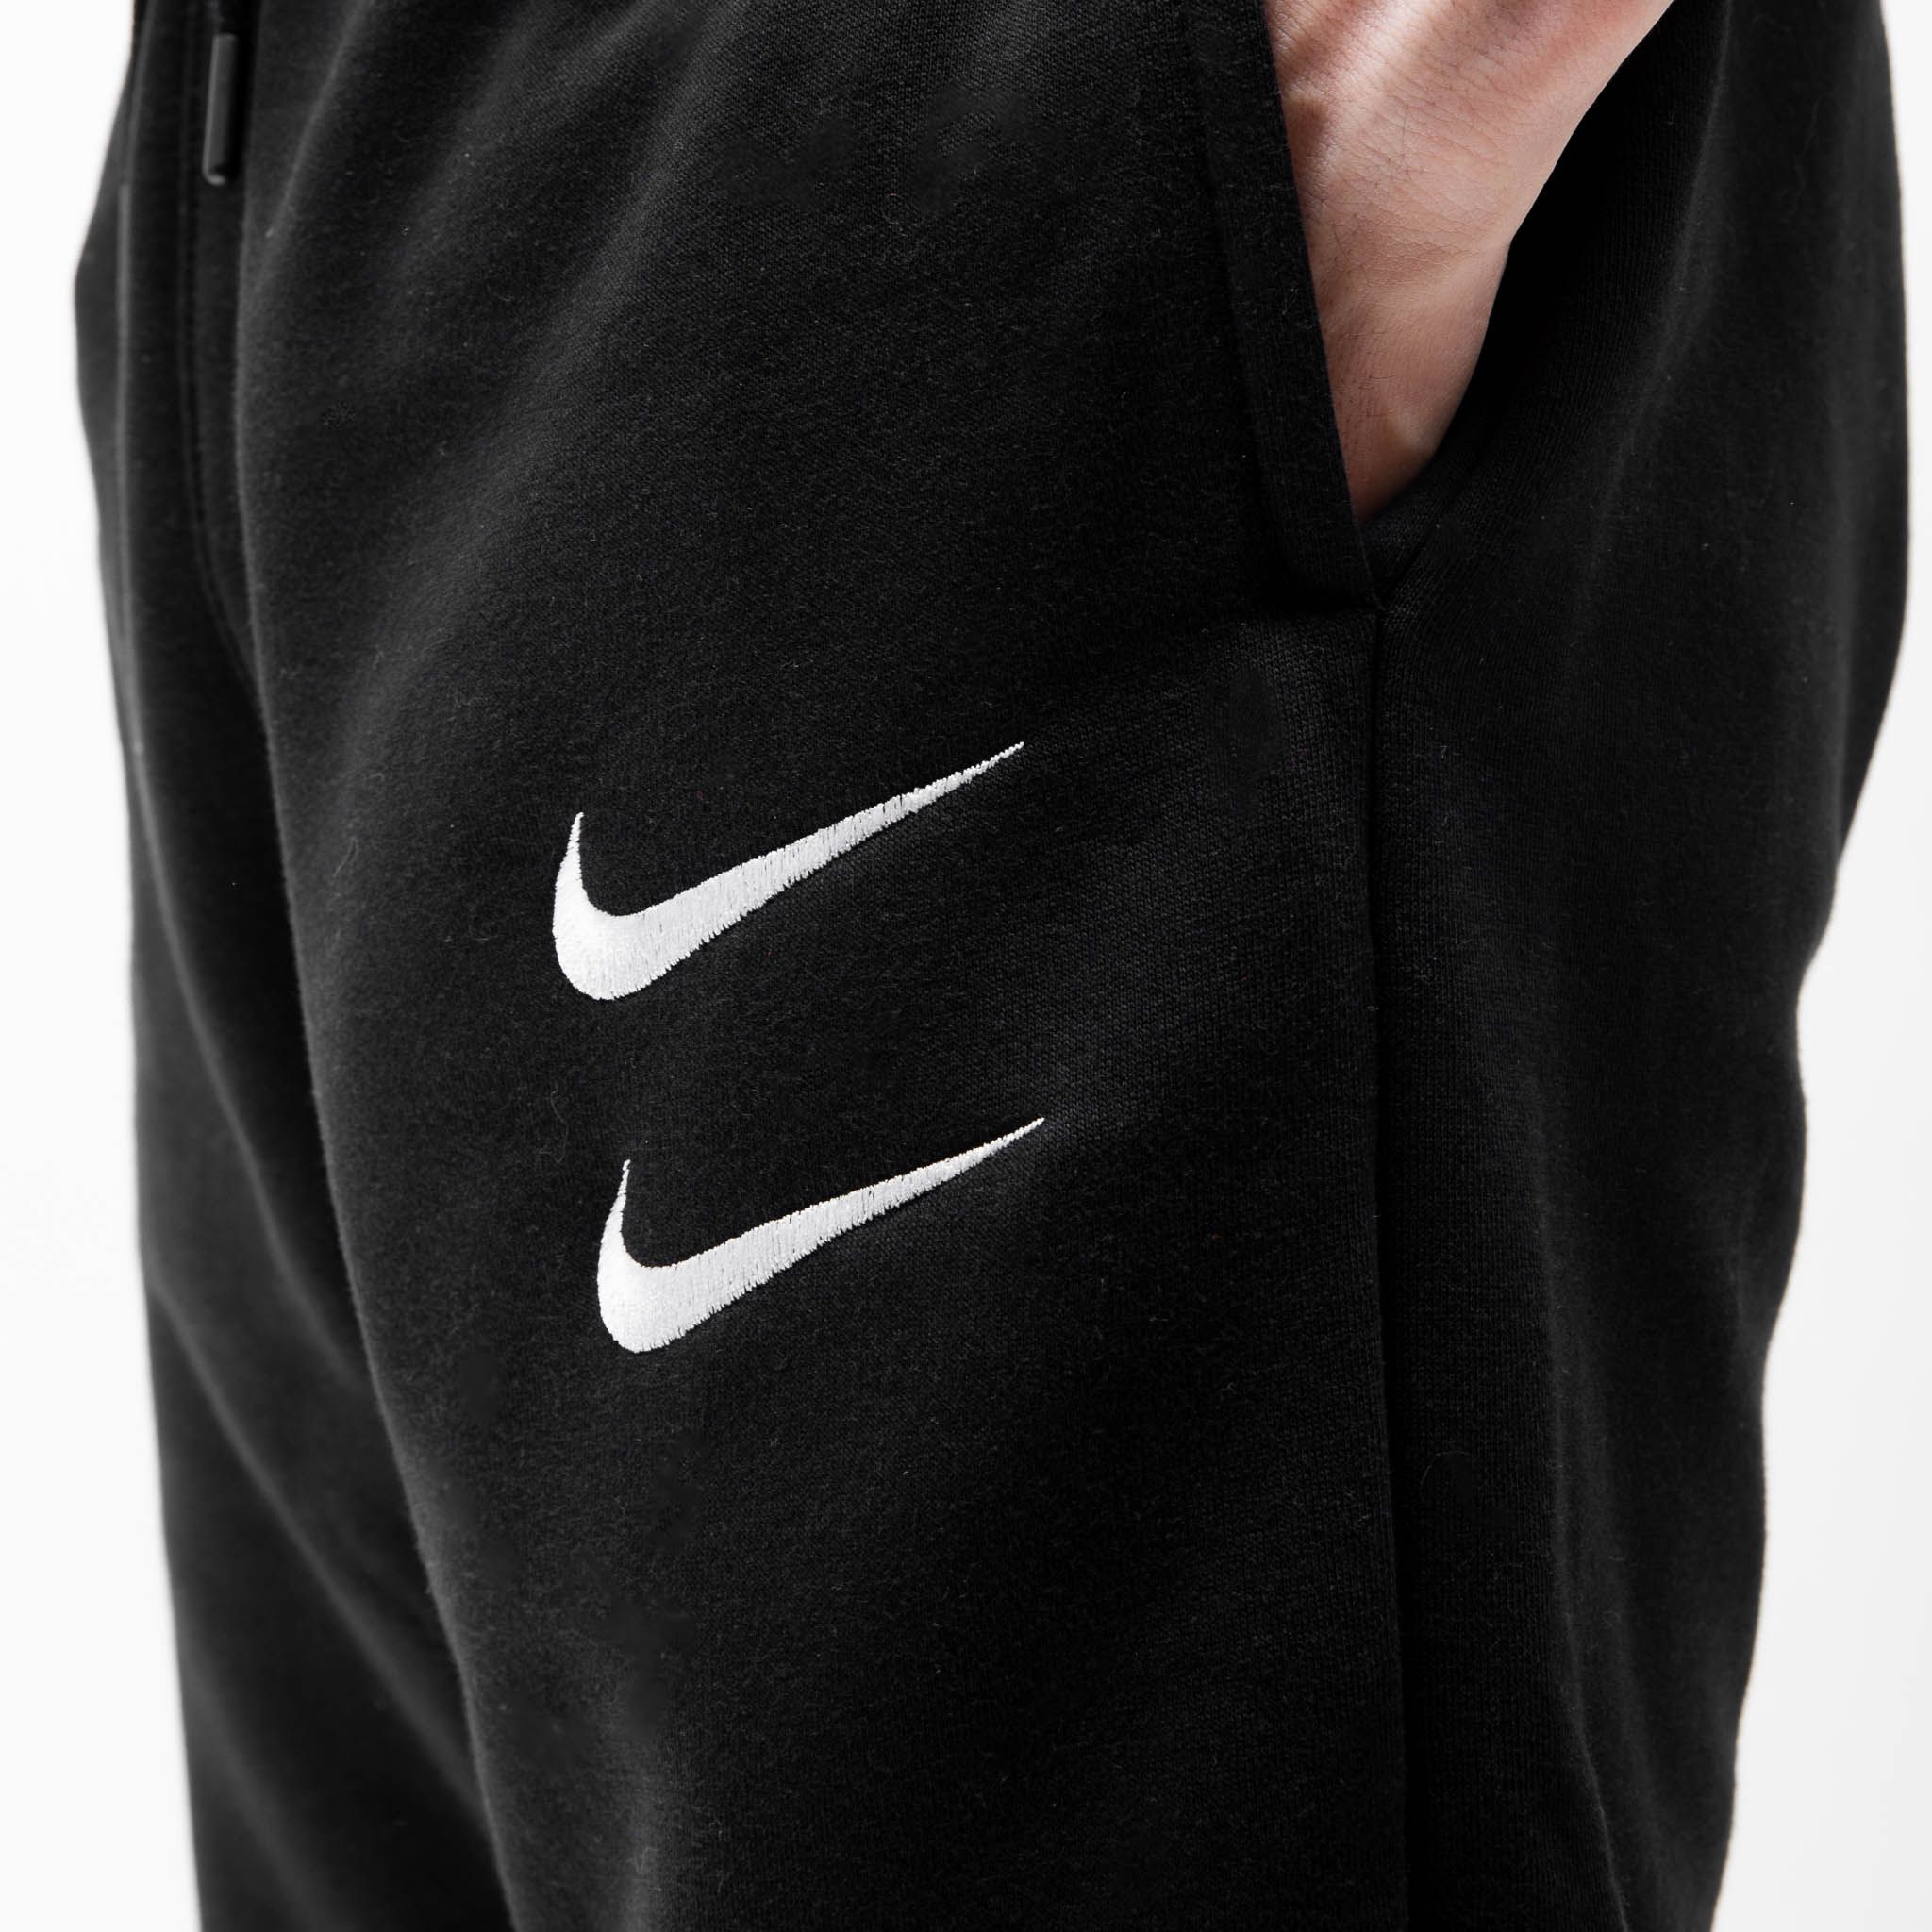 Nike Sportswear Swoosh Pants Black